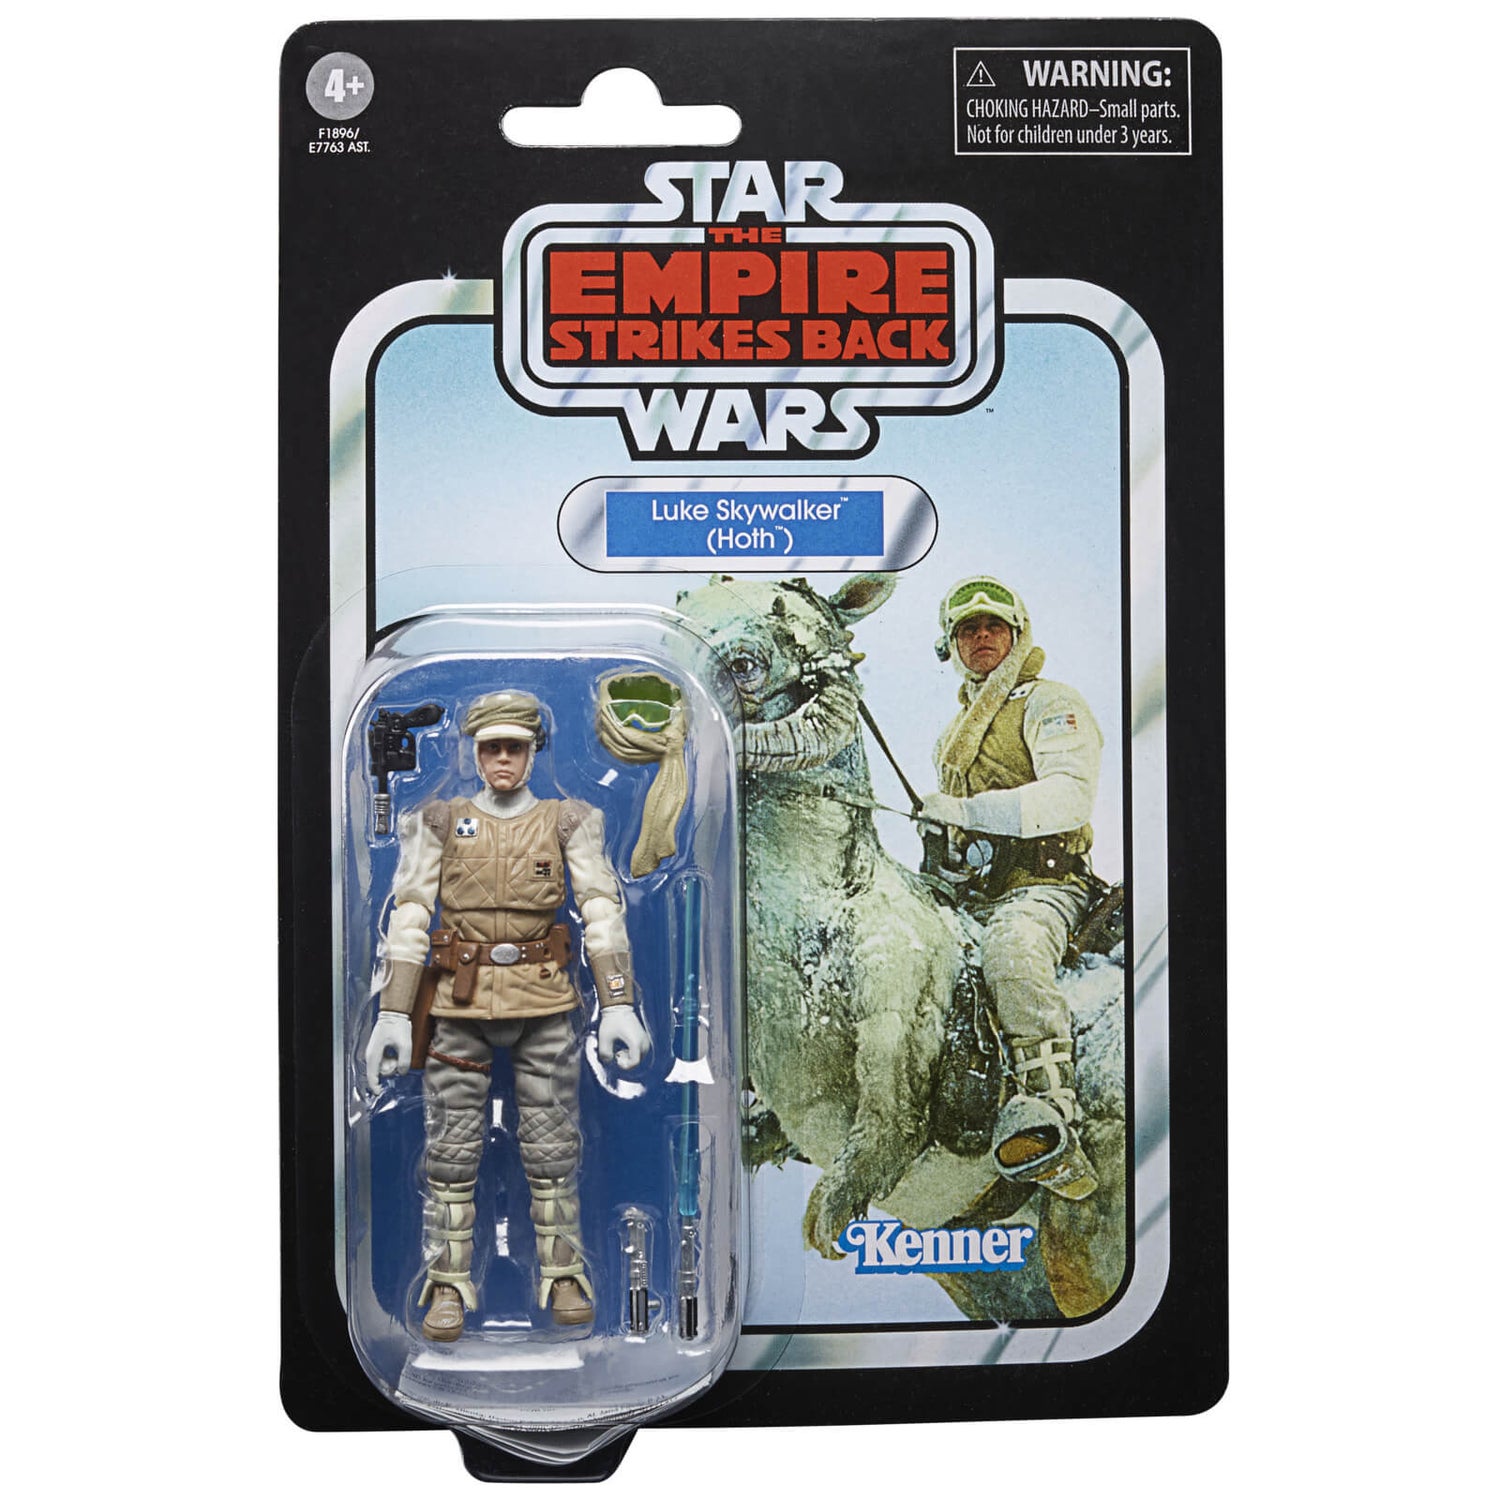 Hasbro Star Wars The Vintage Collection Das Imperium schlägt zurück Luke Skywalker (Hoth) Actionfigur